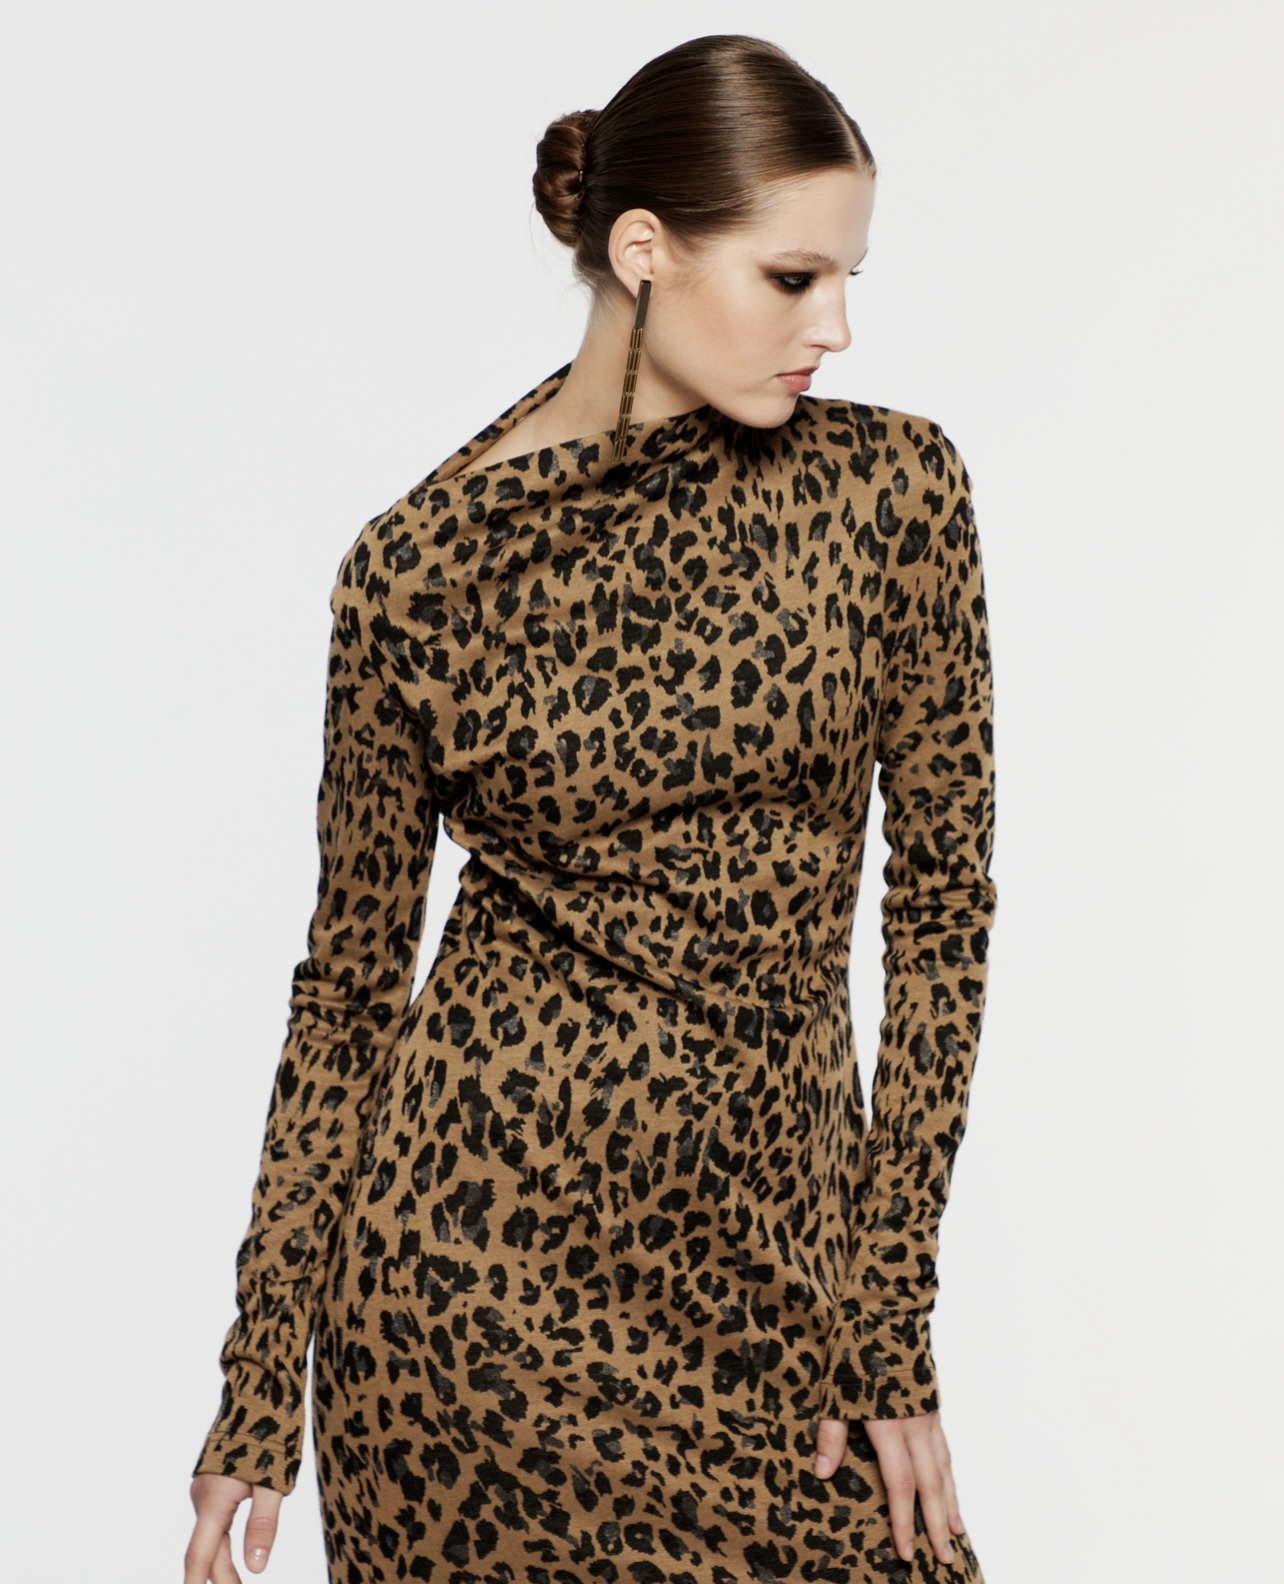 Леопардовое платье Майкл Корс